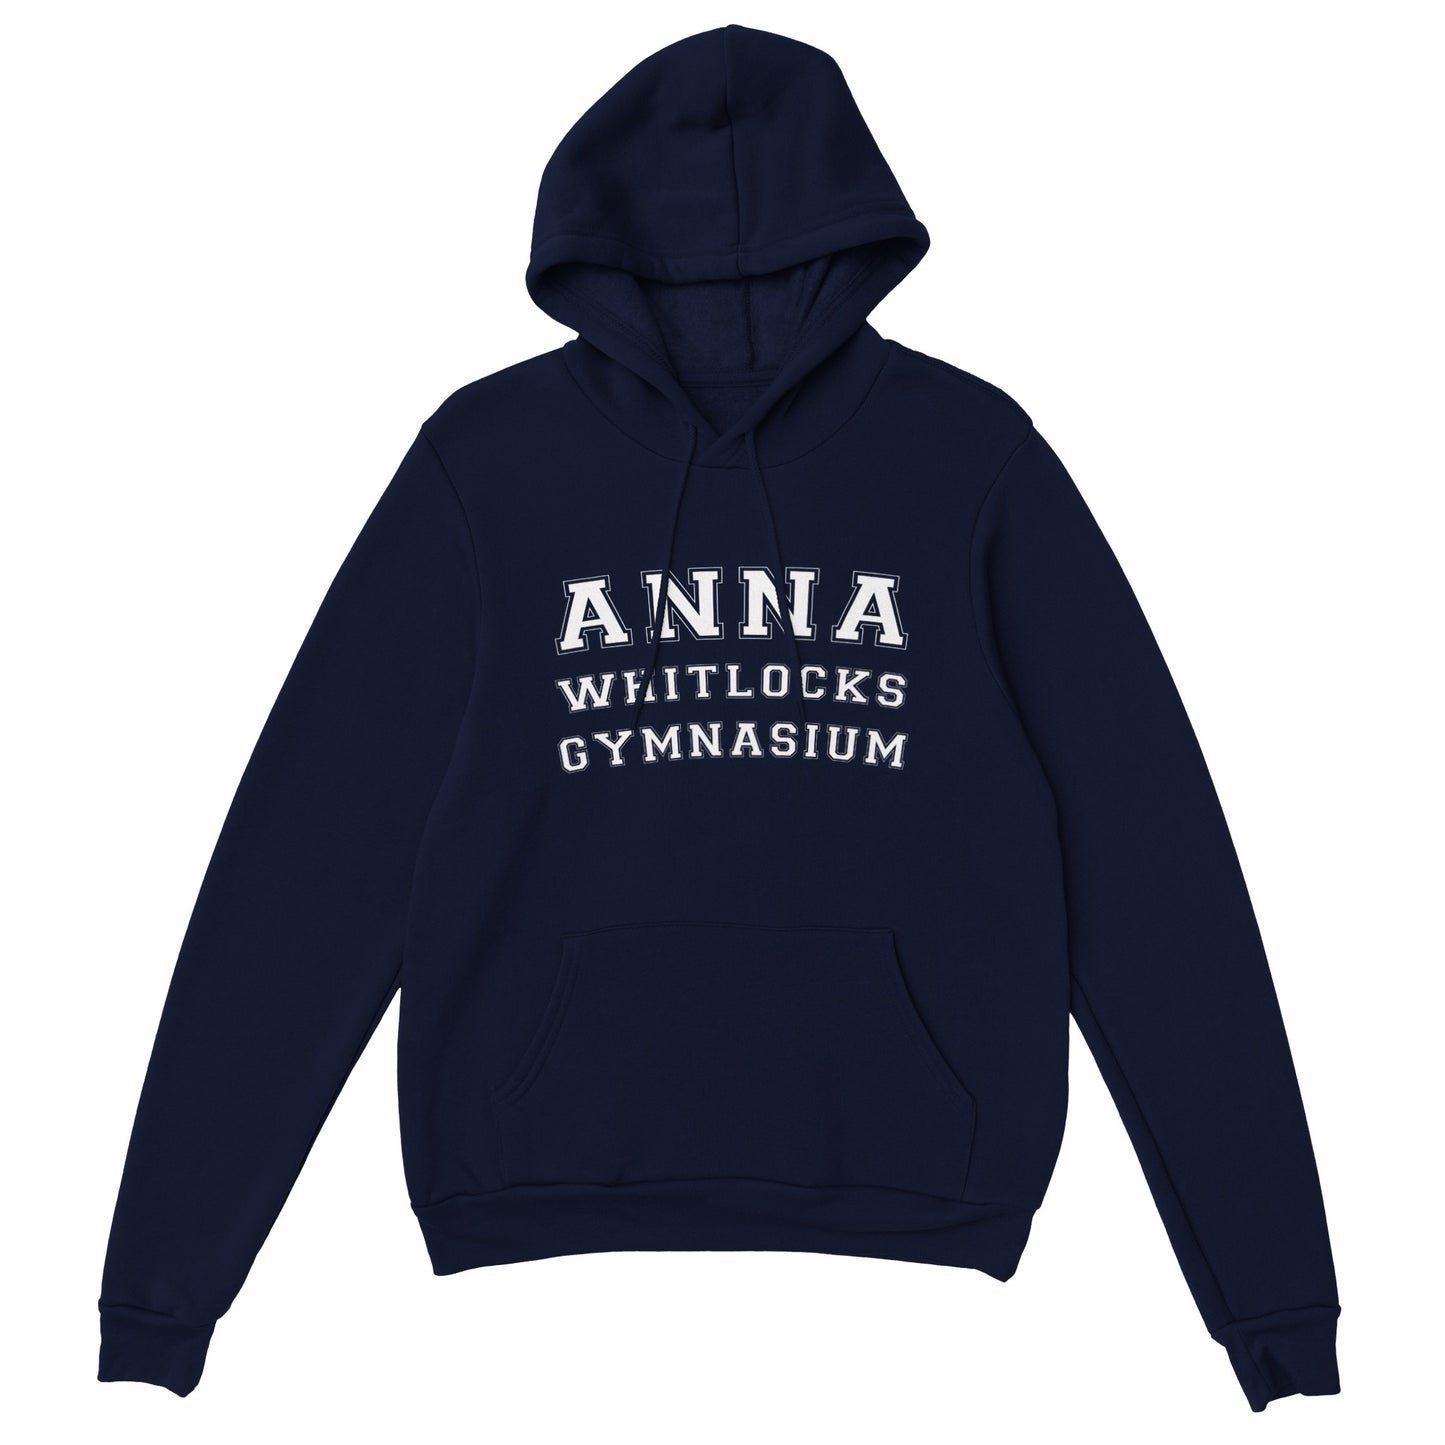 ANNA WHITLOCKS GYMNASIUM - Unisex hoodie - 5 färger